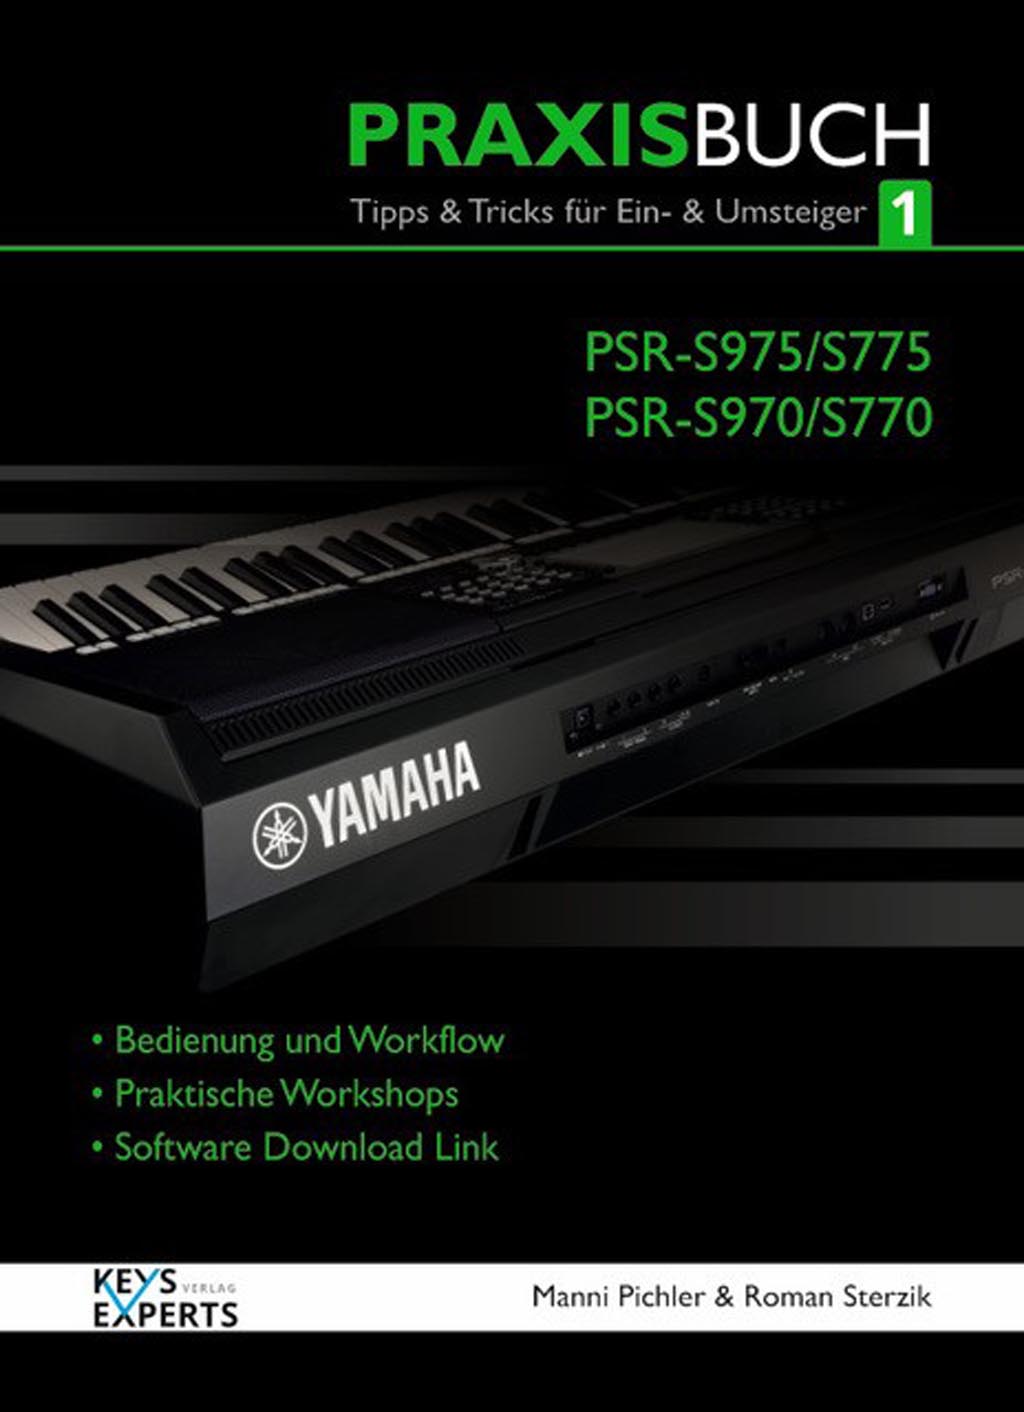 Yamaha Praxisbuch1 PSR-S975/775/S970/770